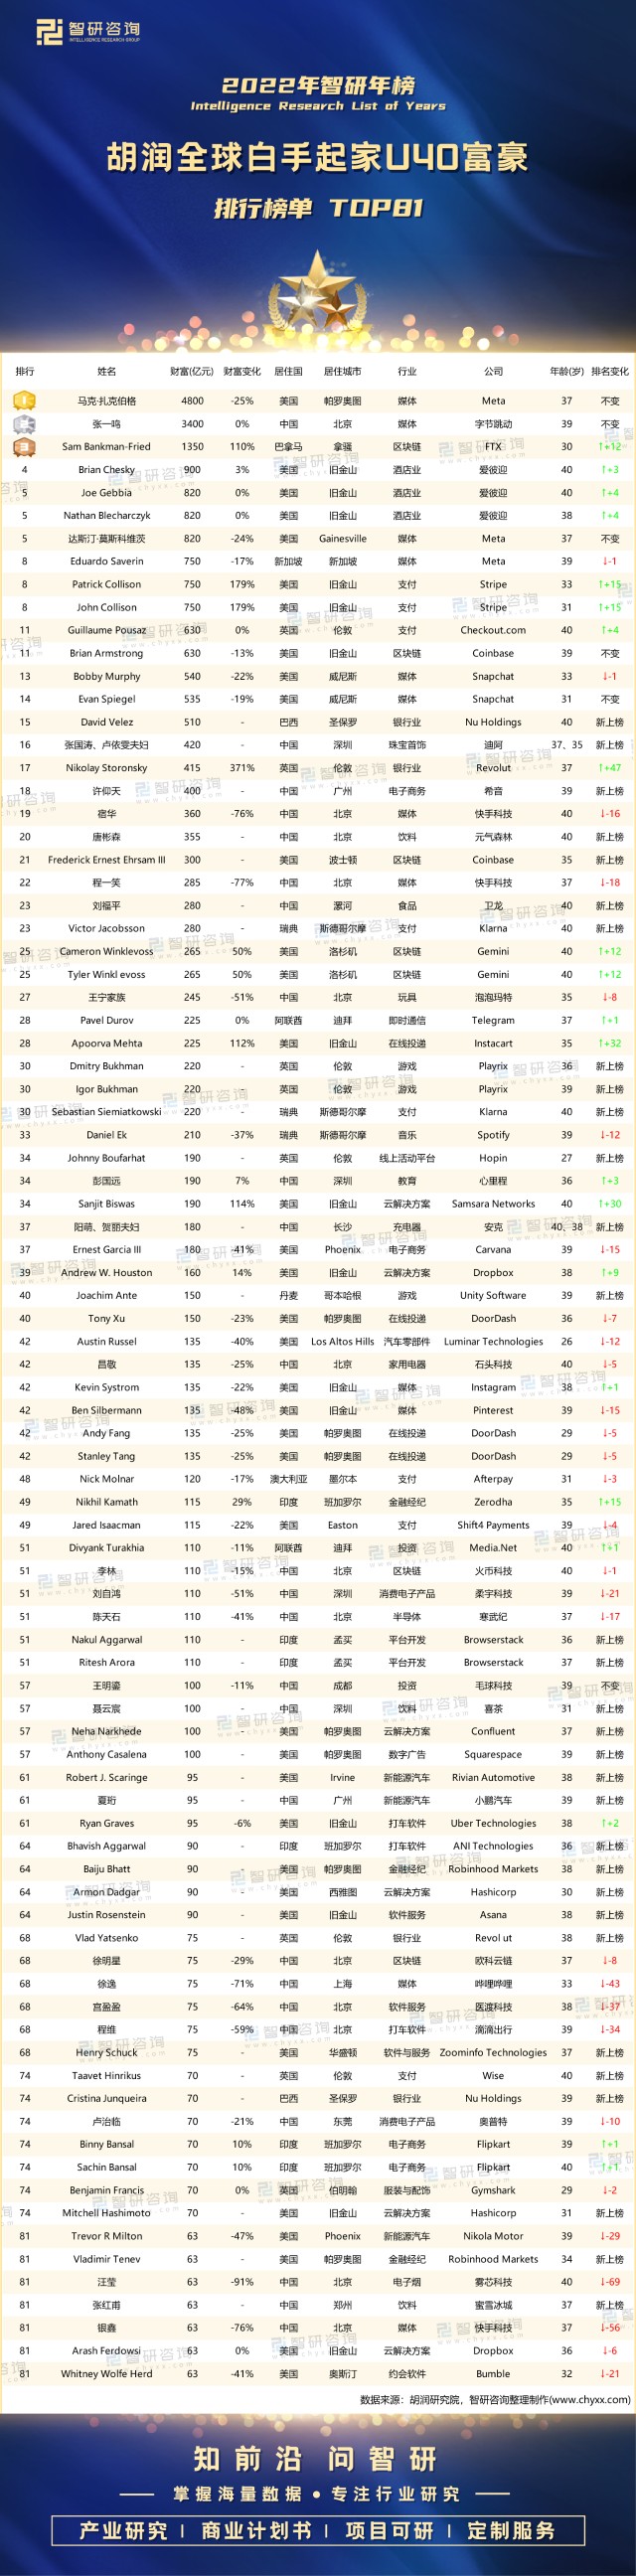 比特币90后富豪_比特币中国莱特币价格走势图_比特币中国富豪排行榜